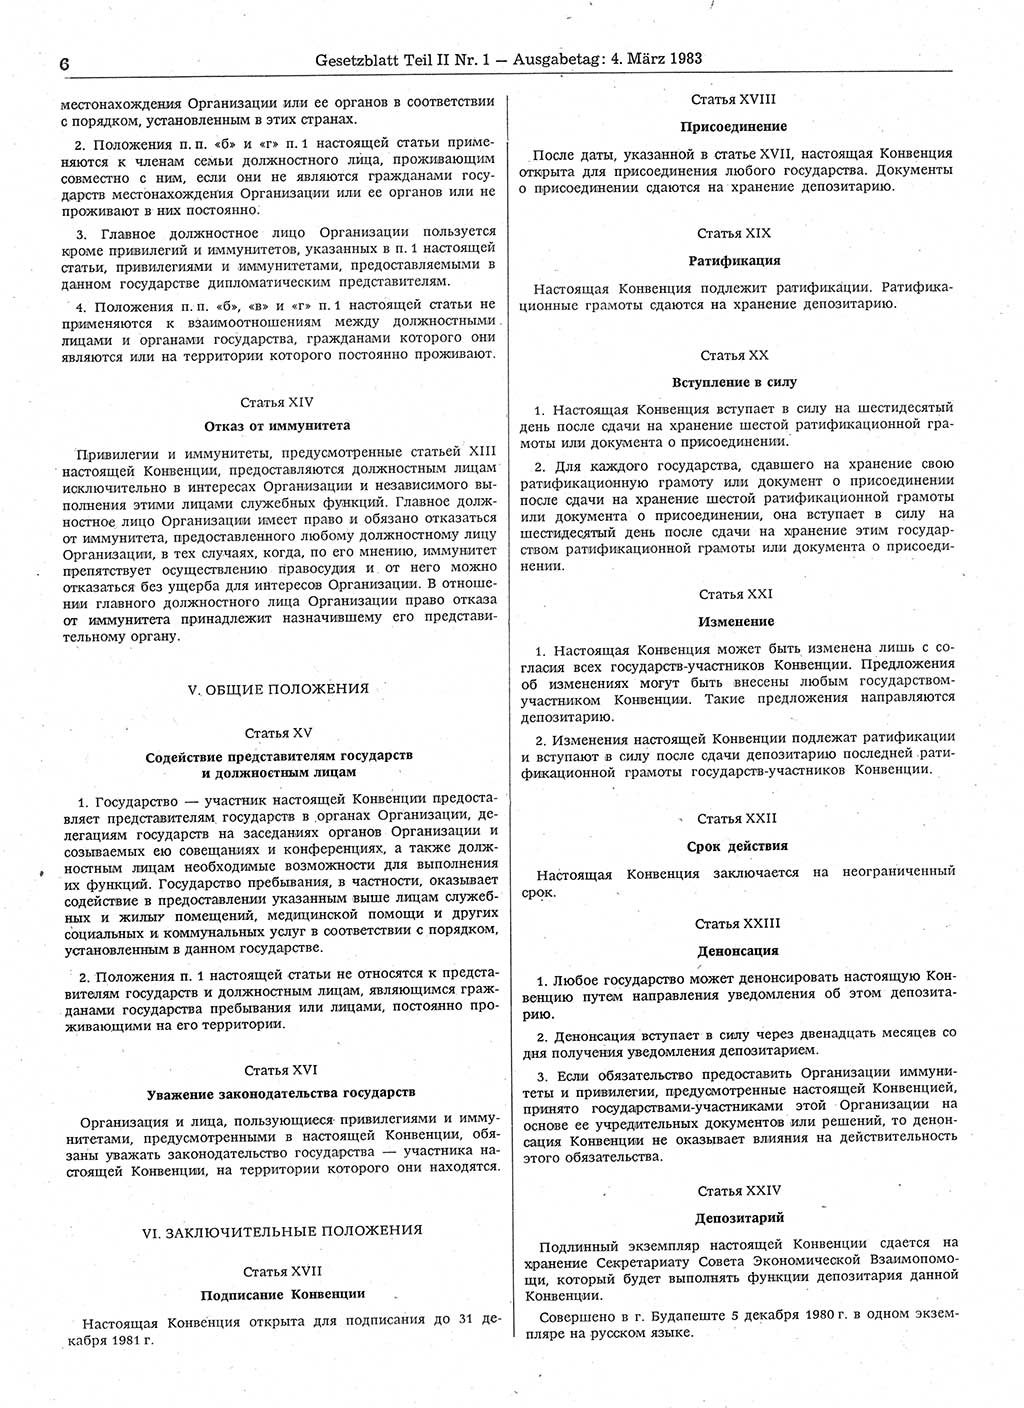 Gesetzblatt (GBl.) der Deutschen Demokratischen Republik (DDR) Teil ⅠⅠ 1983, Seite 6 (GBl. DDR ⅠⅠ 1983, S. 6)